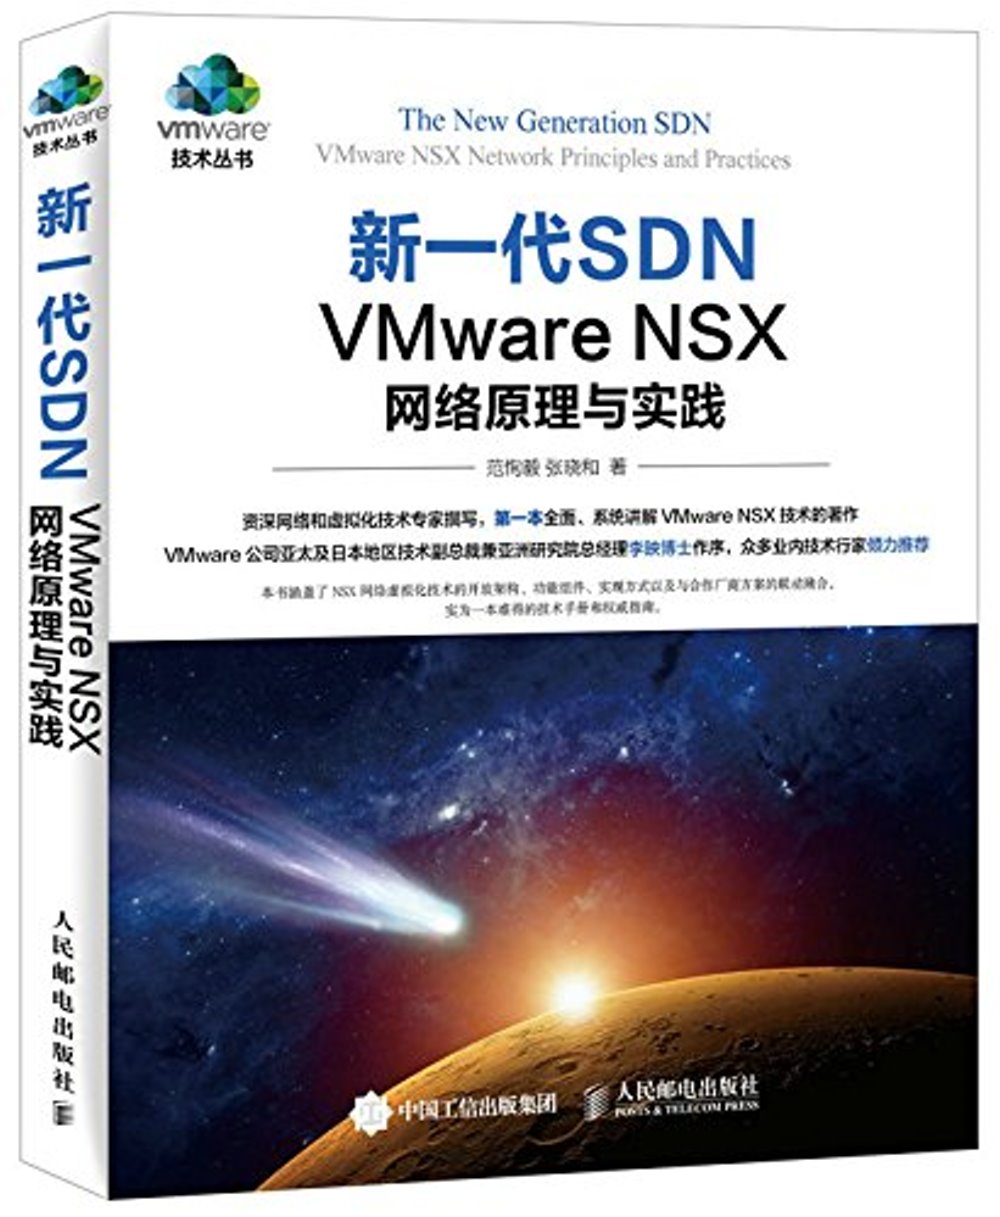 新一代SDN：VMware NSX 網絡原理與實踐